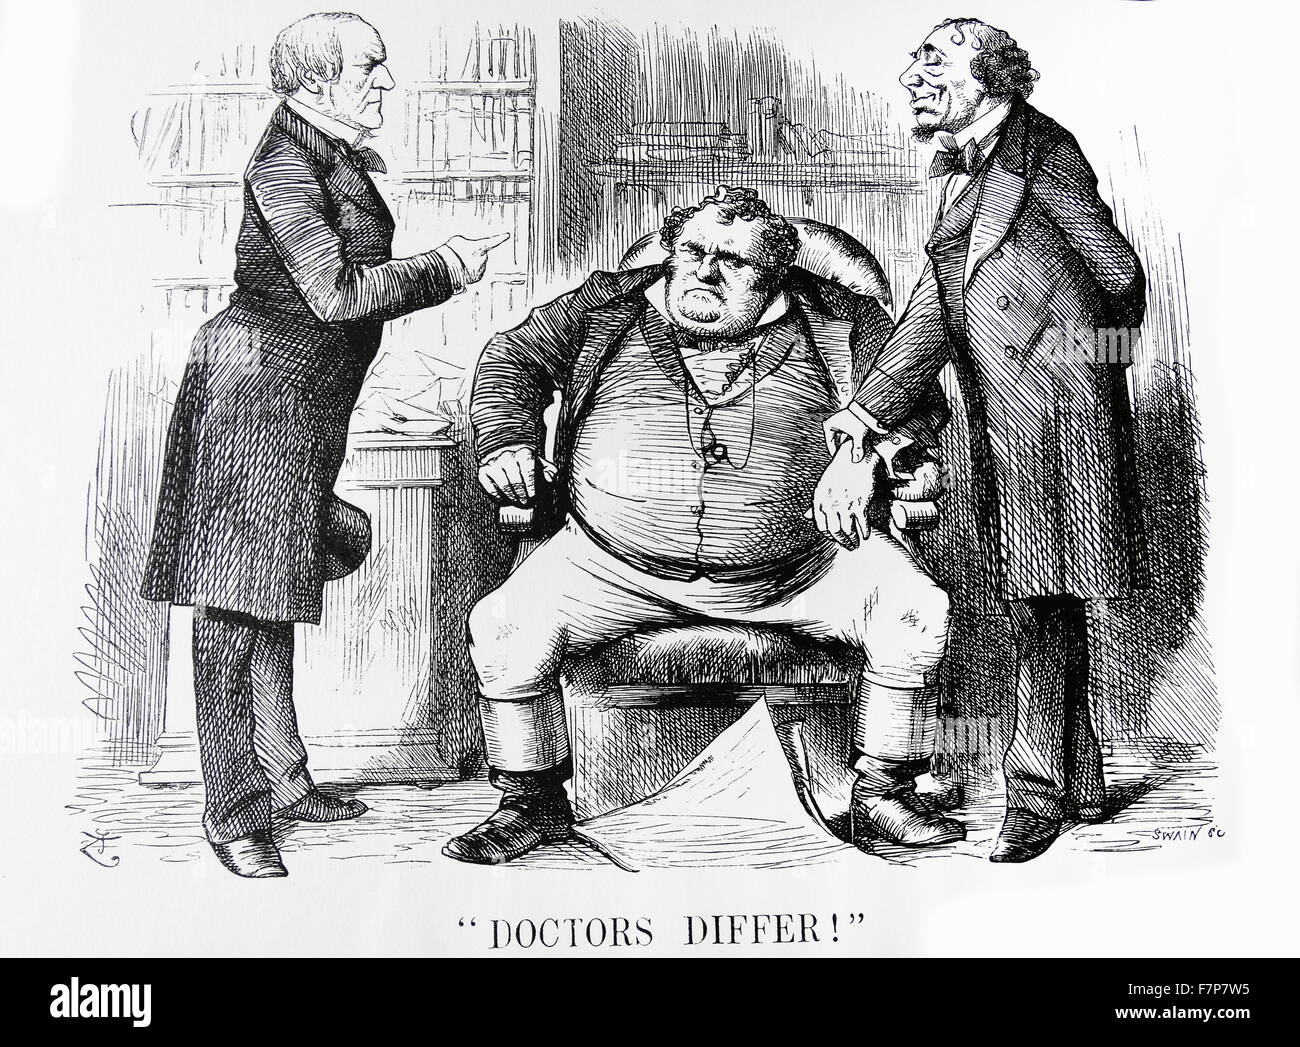 Une différence d'opinion parmi les médecins. DISRAELI, le premier ministre, prend le pouls de John Bull, tandis que Gladstone, chef de l'opposition libérale, estime que son traitement serait plus bénéfique. Banque D'Images